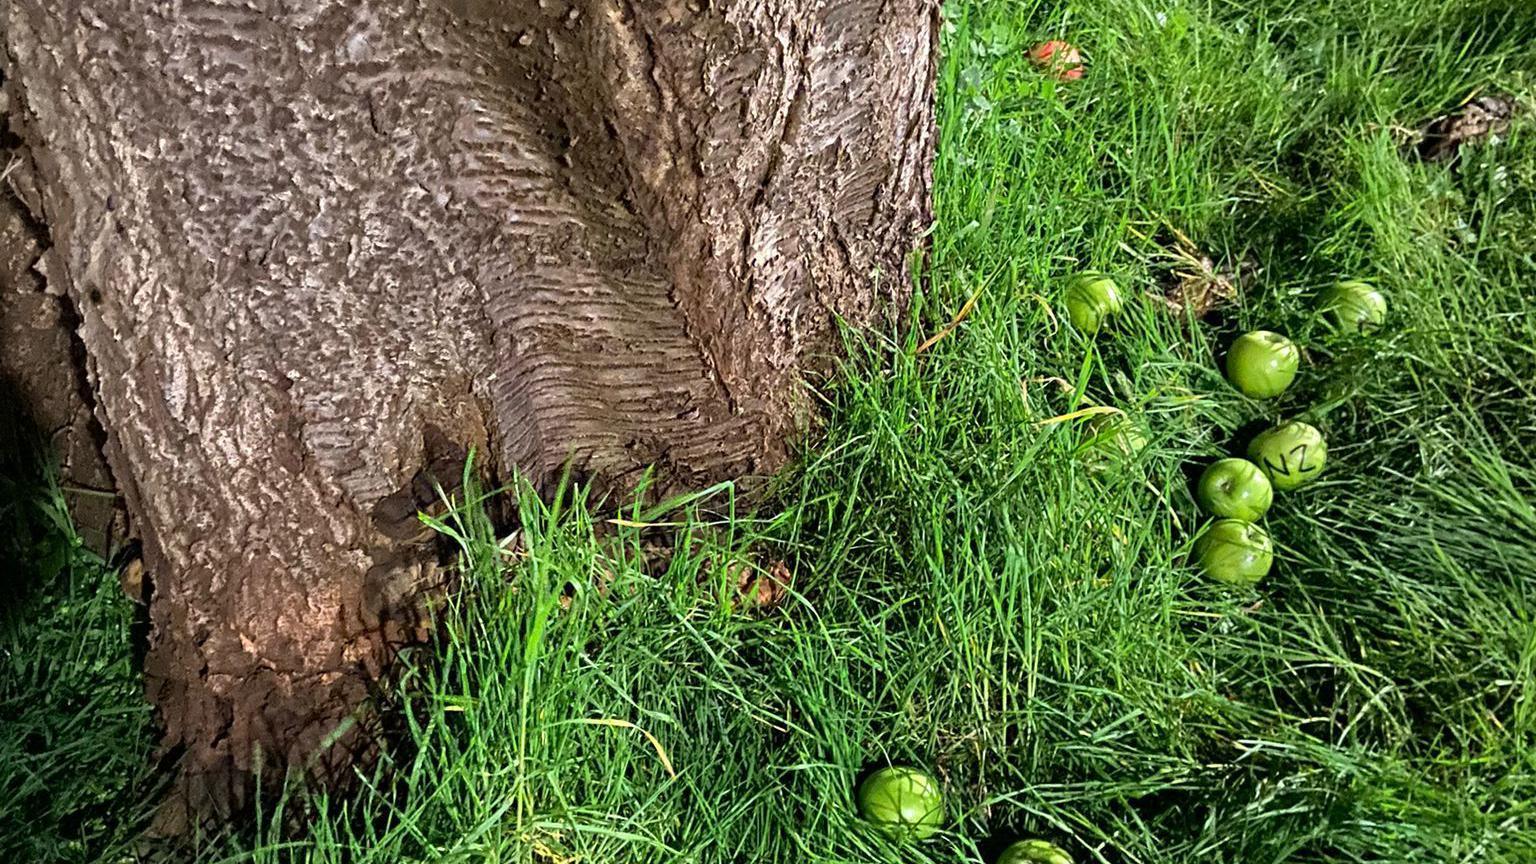 Manzanas verdes junto al cerezo donde Banksy hizo su obra